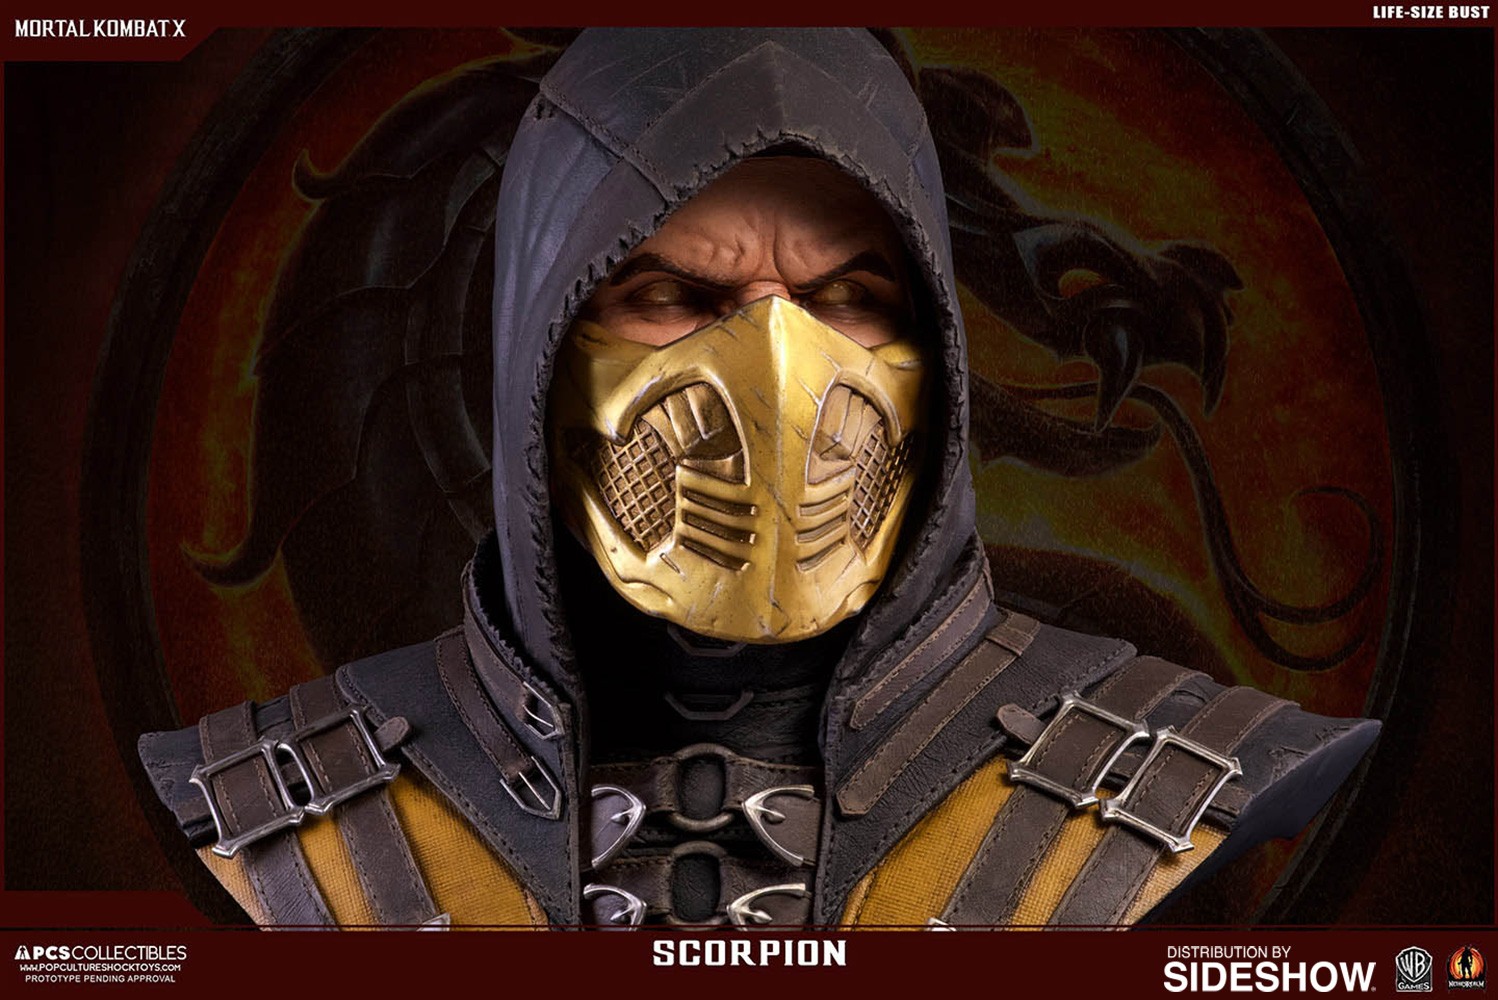 Scorpion (Prototype Shown) View 5